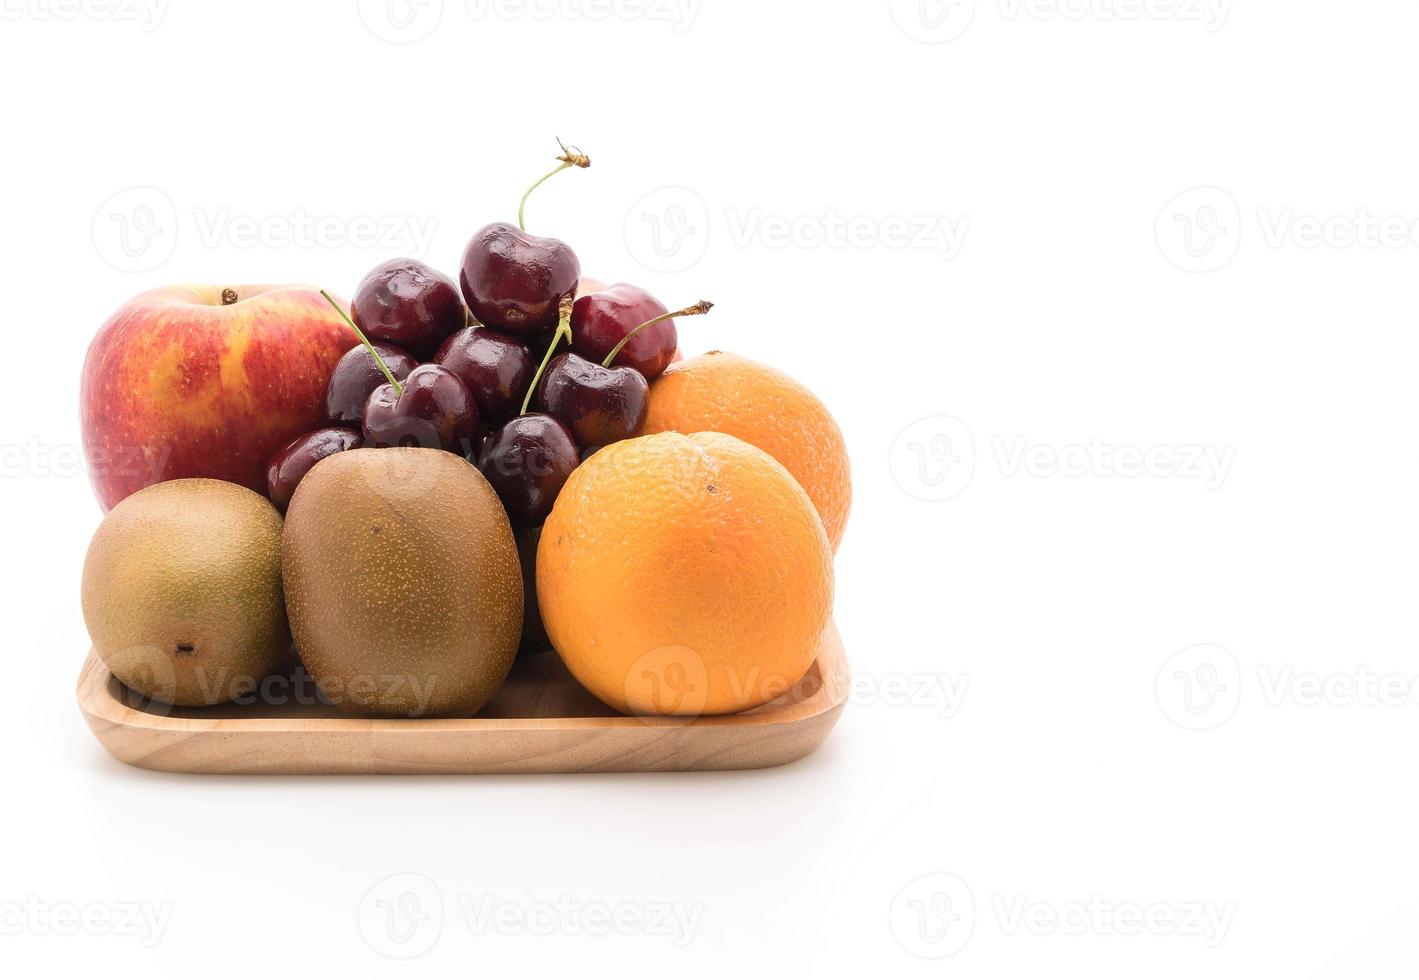 Fruits mélangés en plaque de bois sur fond blanc photo